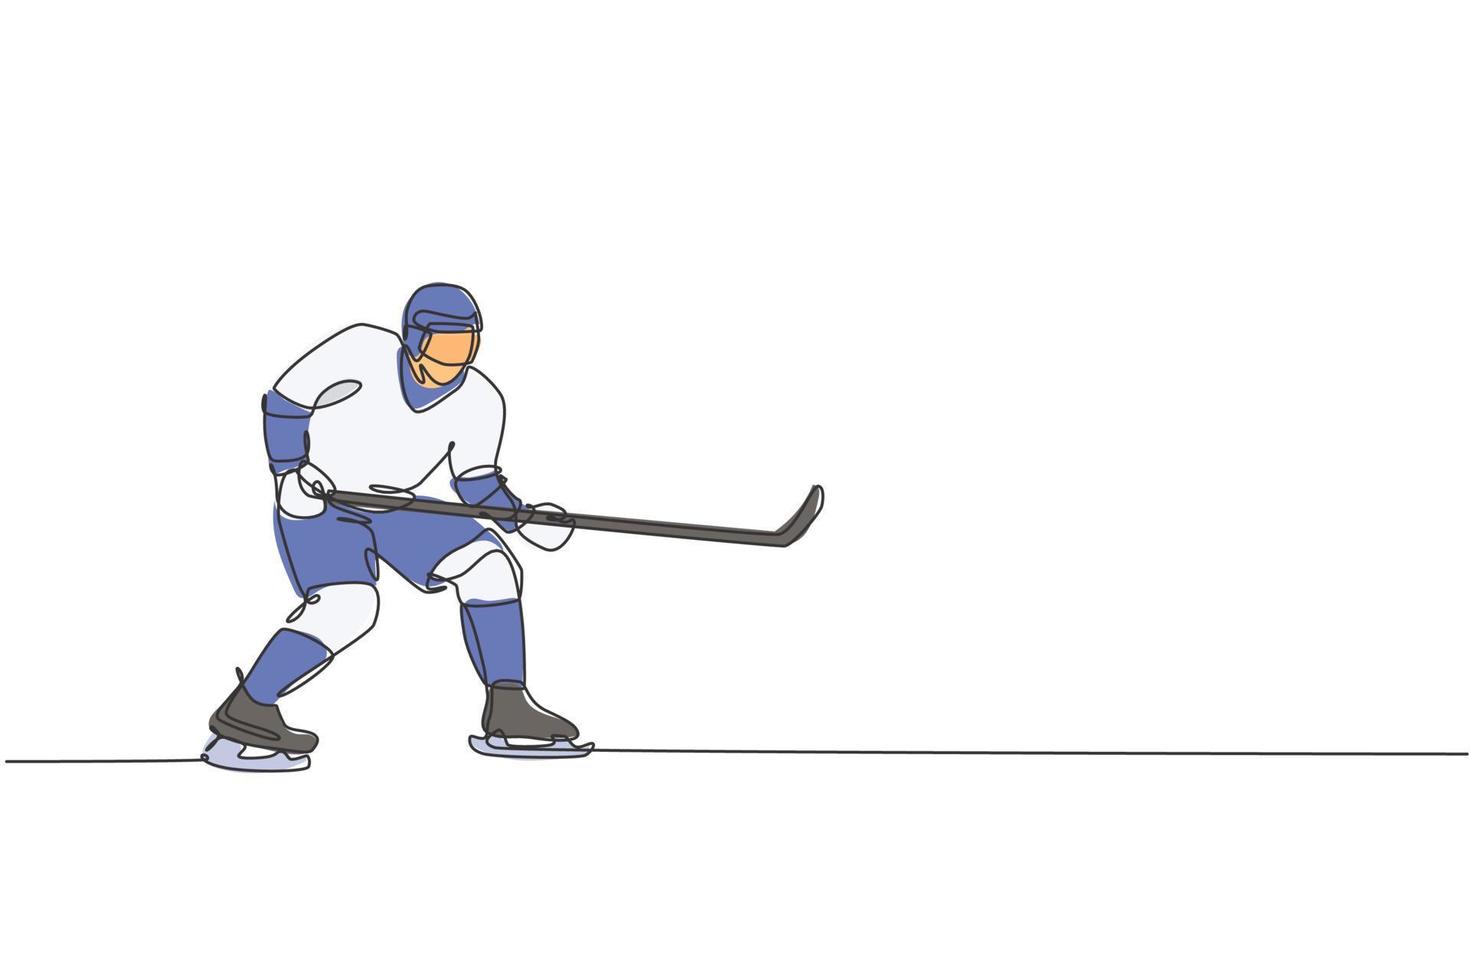 unico disegno a linea continua di un giovane giocatore professionista di hockey su ghiaccio pongono la difesa della posizione sull'arena della pista di pattinaggio. concetto di sport invernale estremo. illustrazione grafica vettoriale di disegno di una linea alla moda